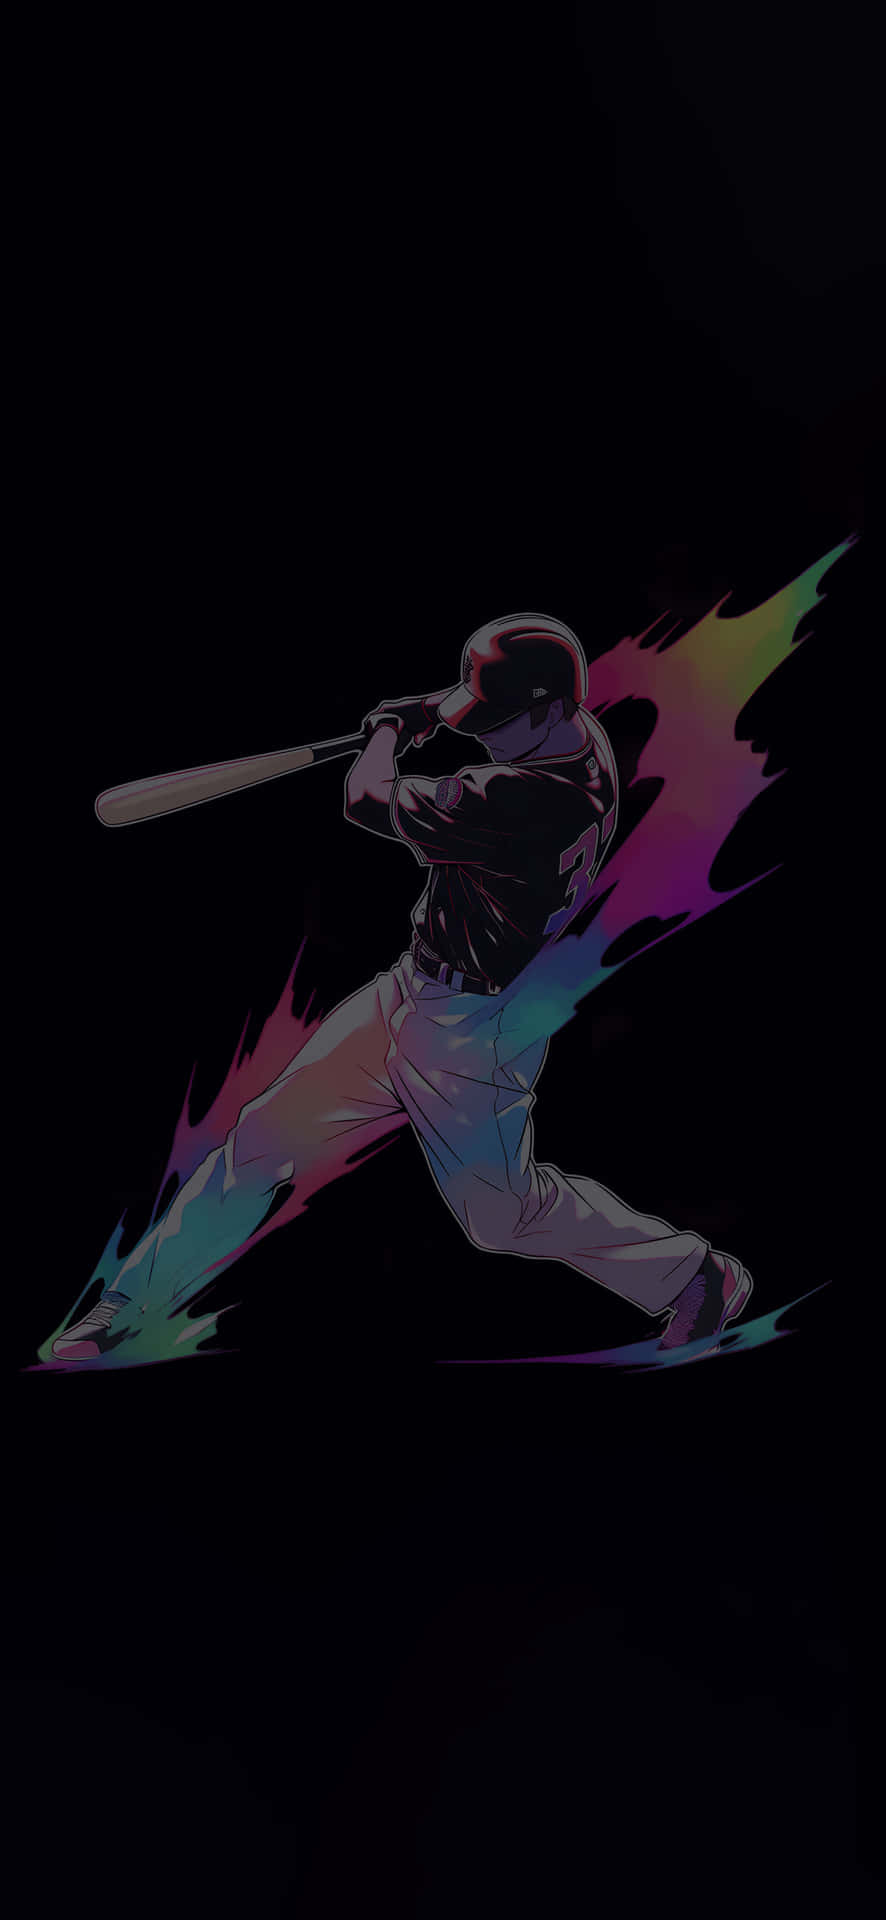 Dynamic_ Baseball_ Swing_ Artwork.jpg Wallpaper